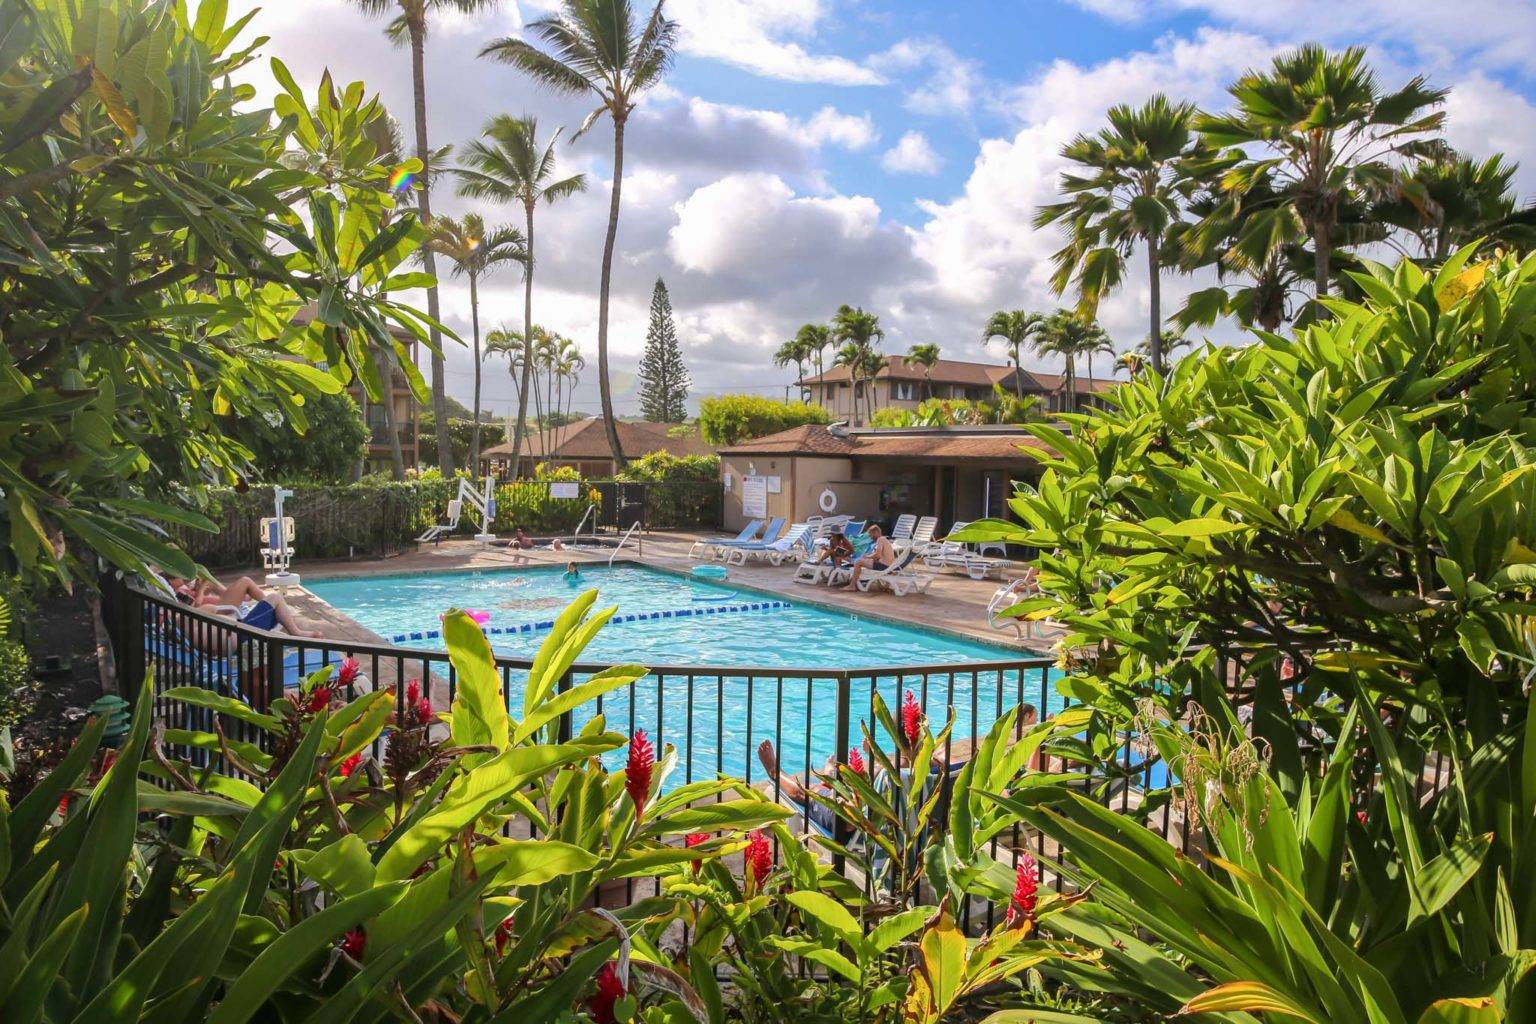 Pono Kai Resort pool surrounded by a lush garden.